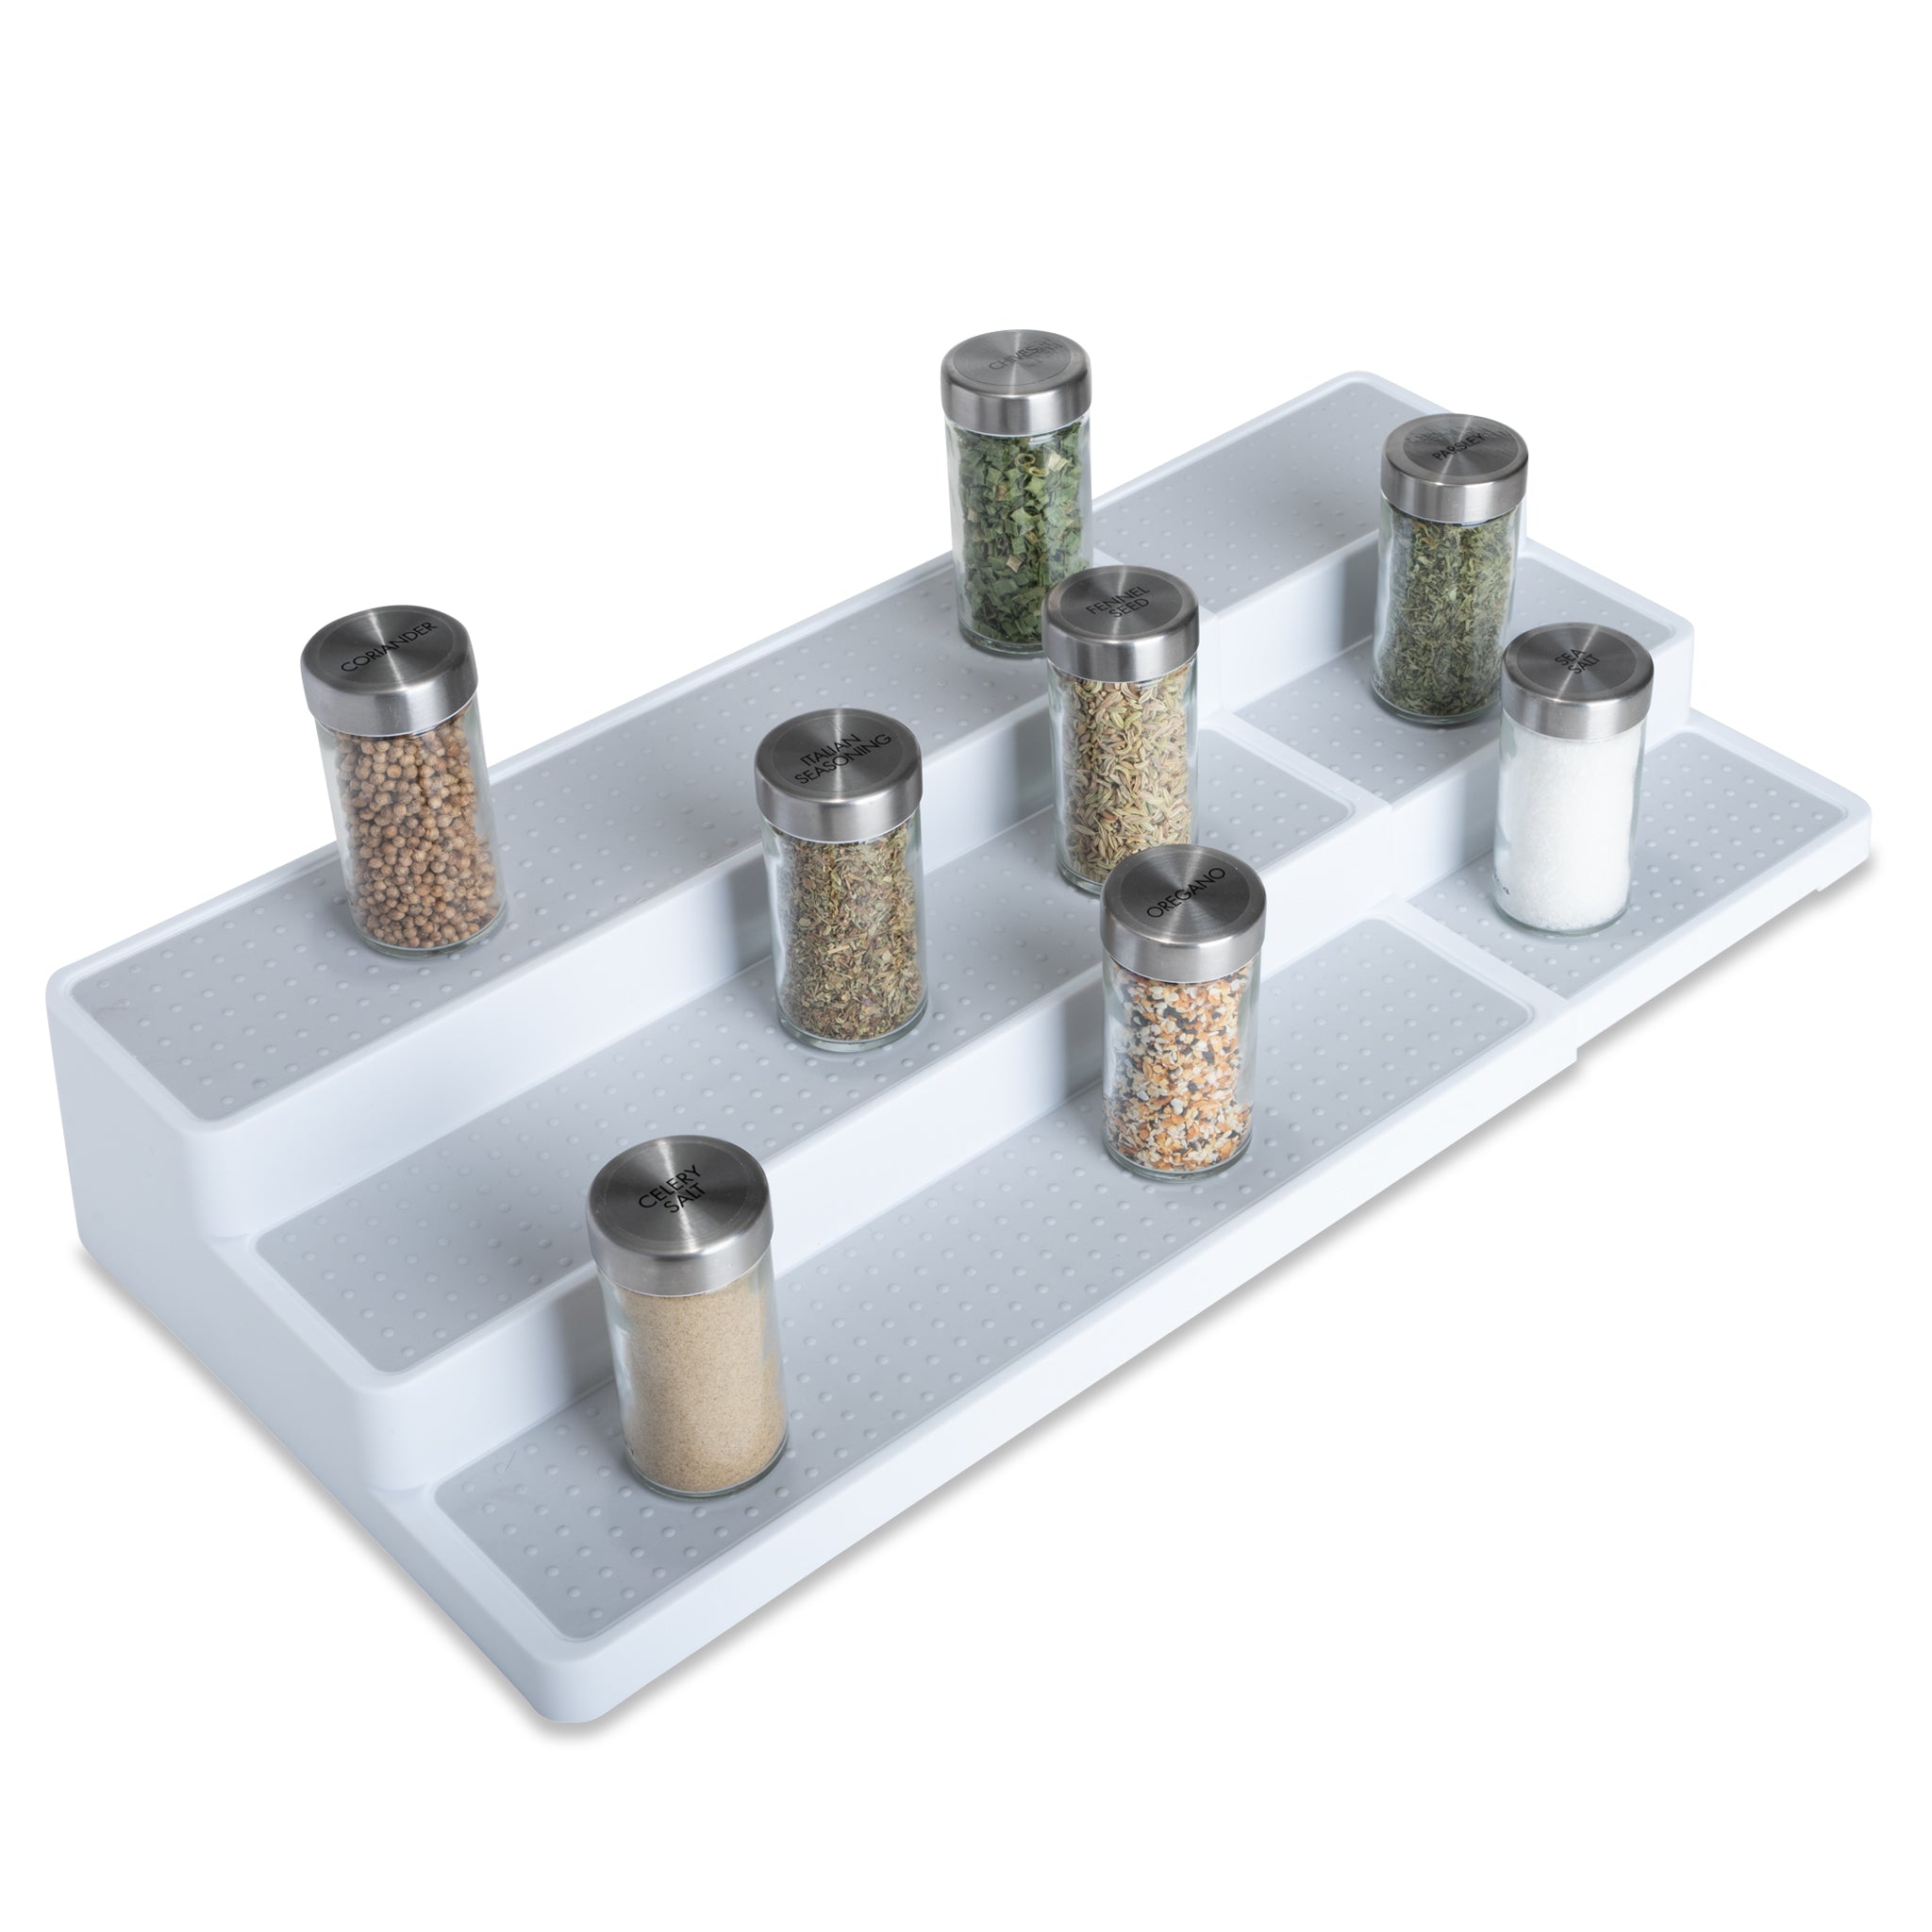 Plastic Expandable 3-Tier Spice Rack - White - Smart Design® 1